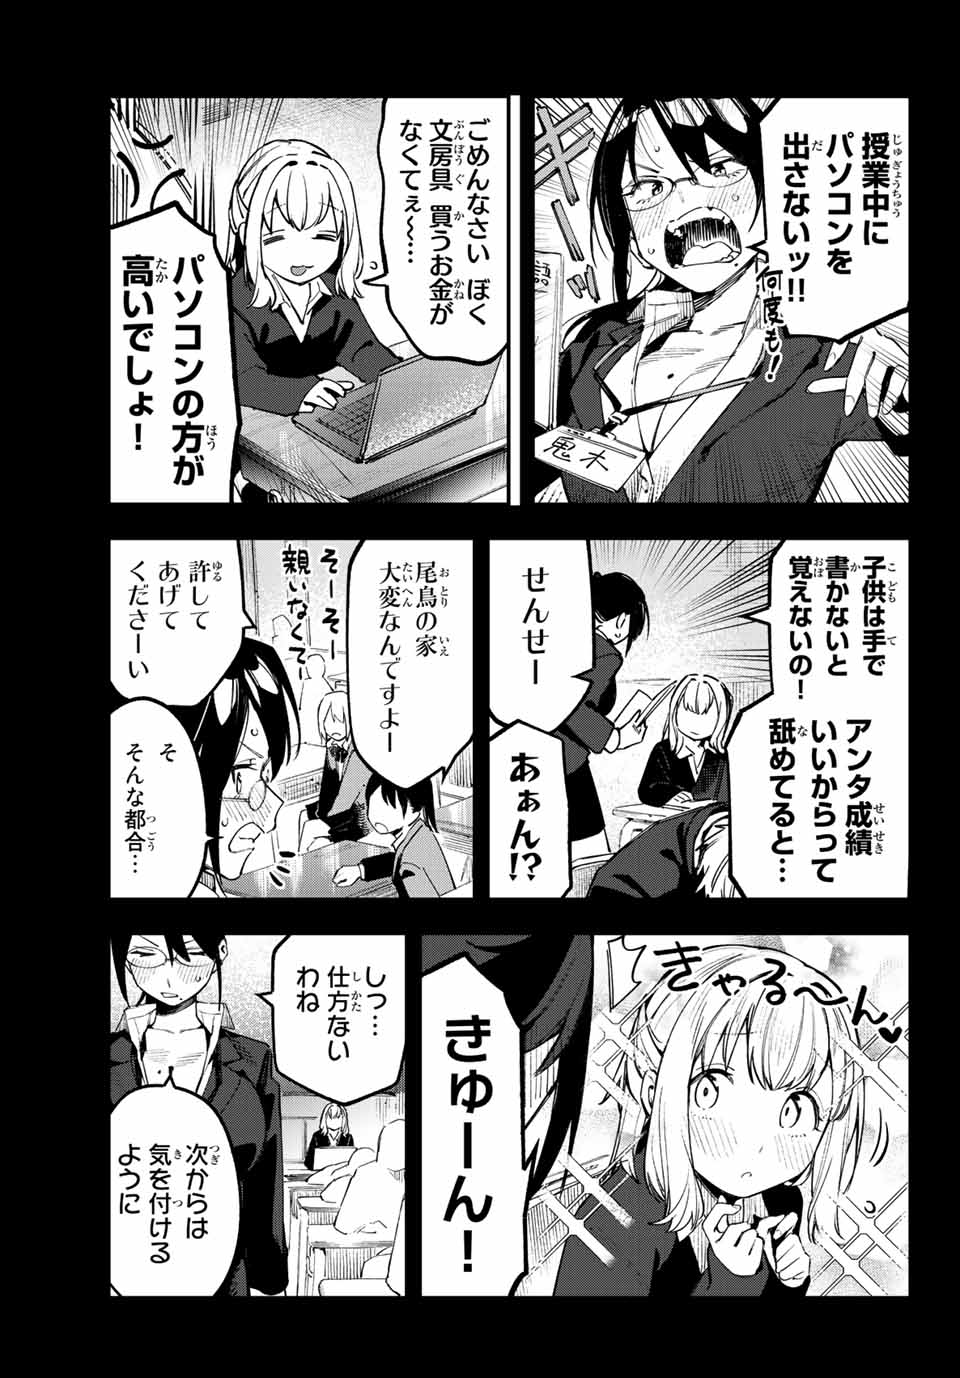 Seitokai mi mo Ana wa Aru! - Chapter 41 - Page 3